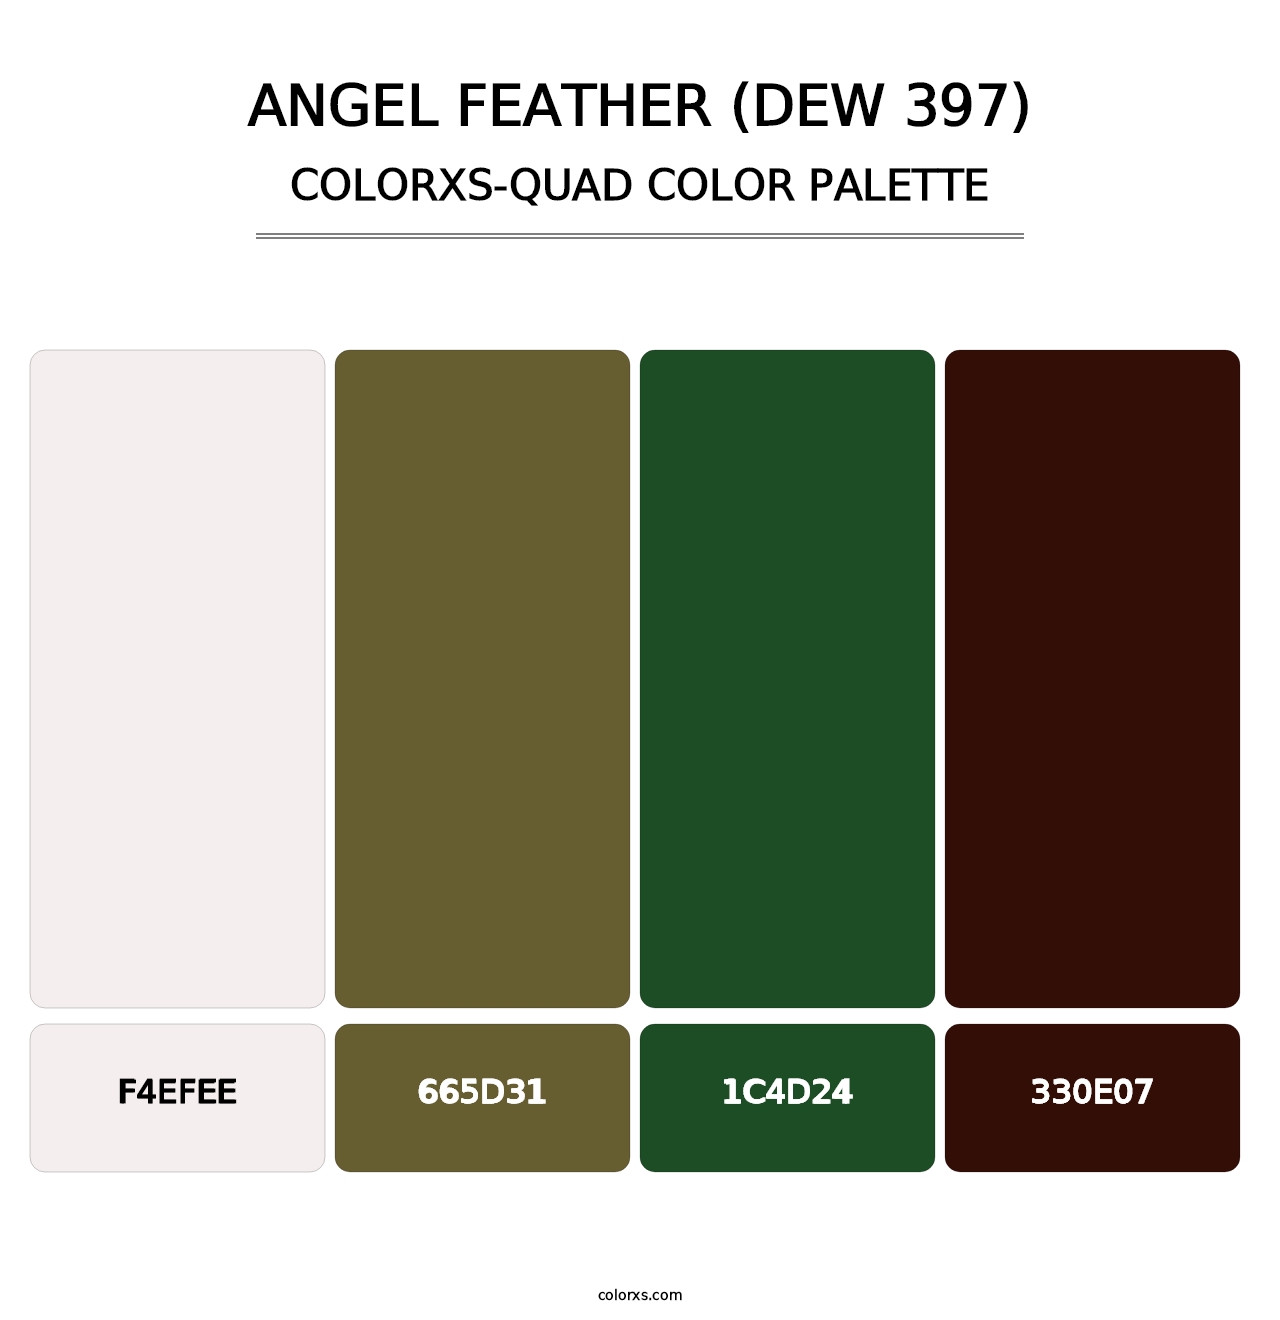 Angel Feather (DEW 397) - Colorxs Quad Palette